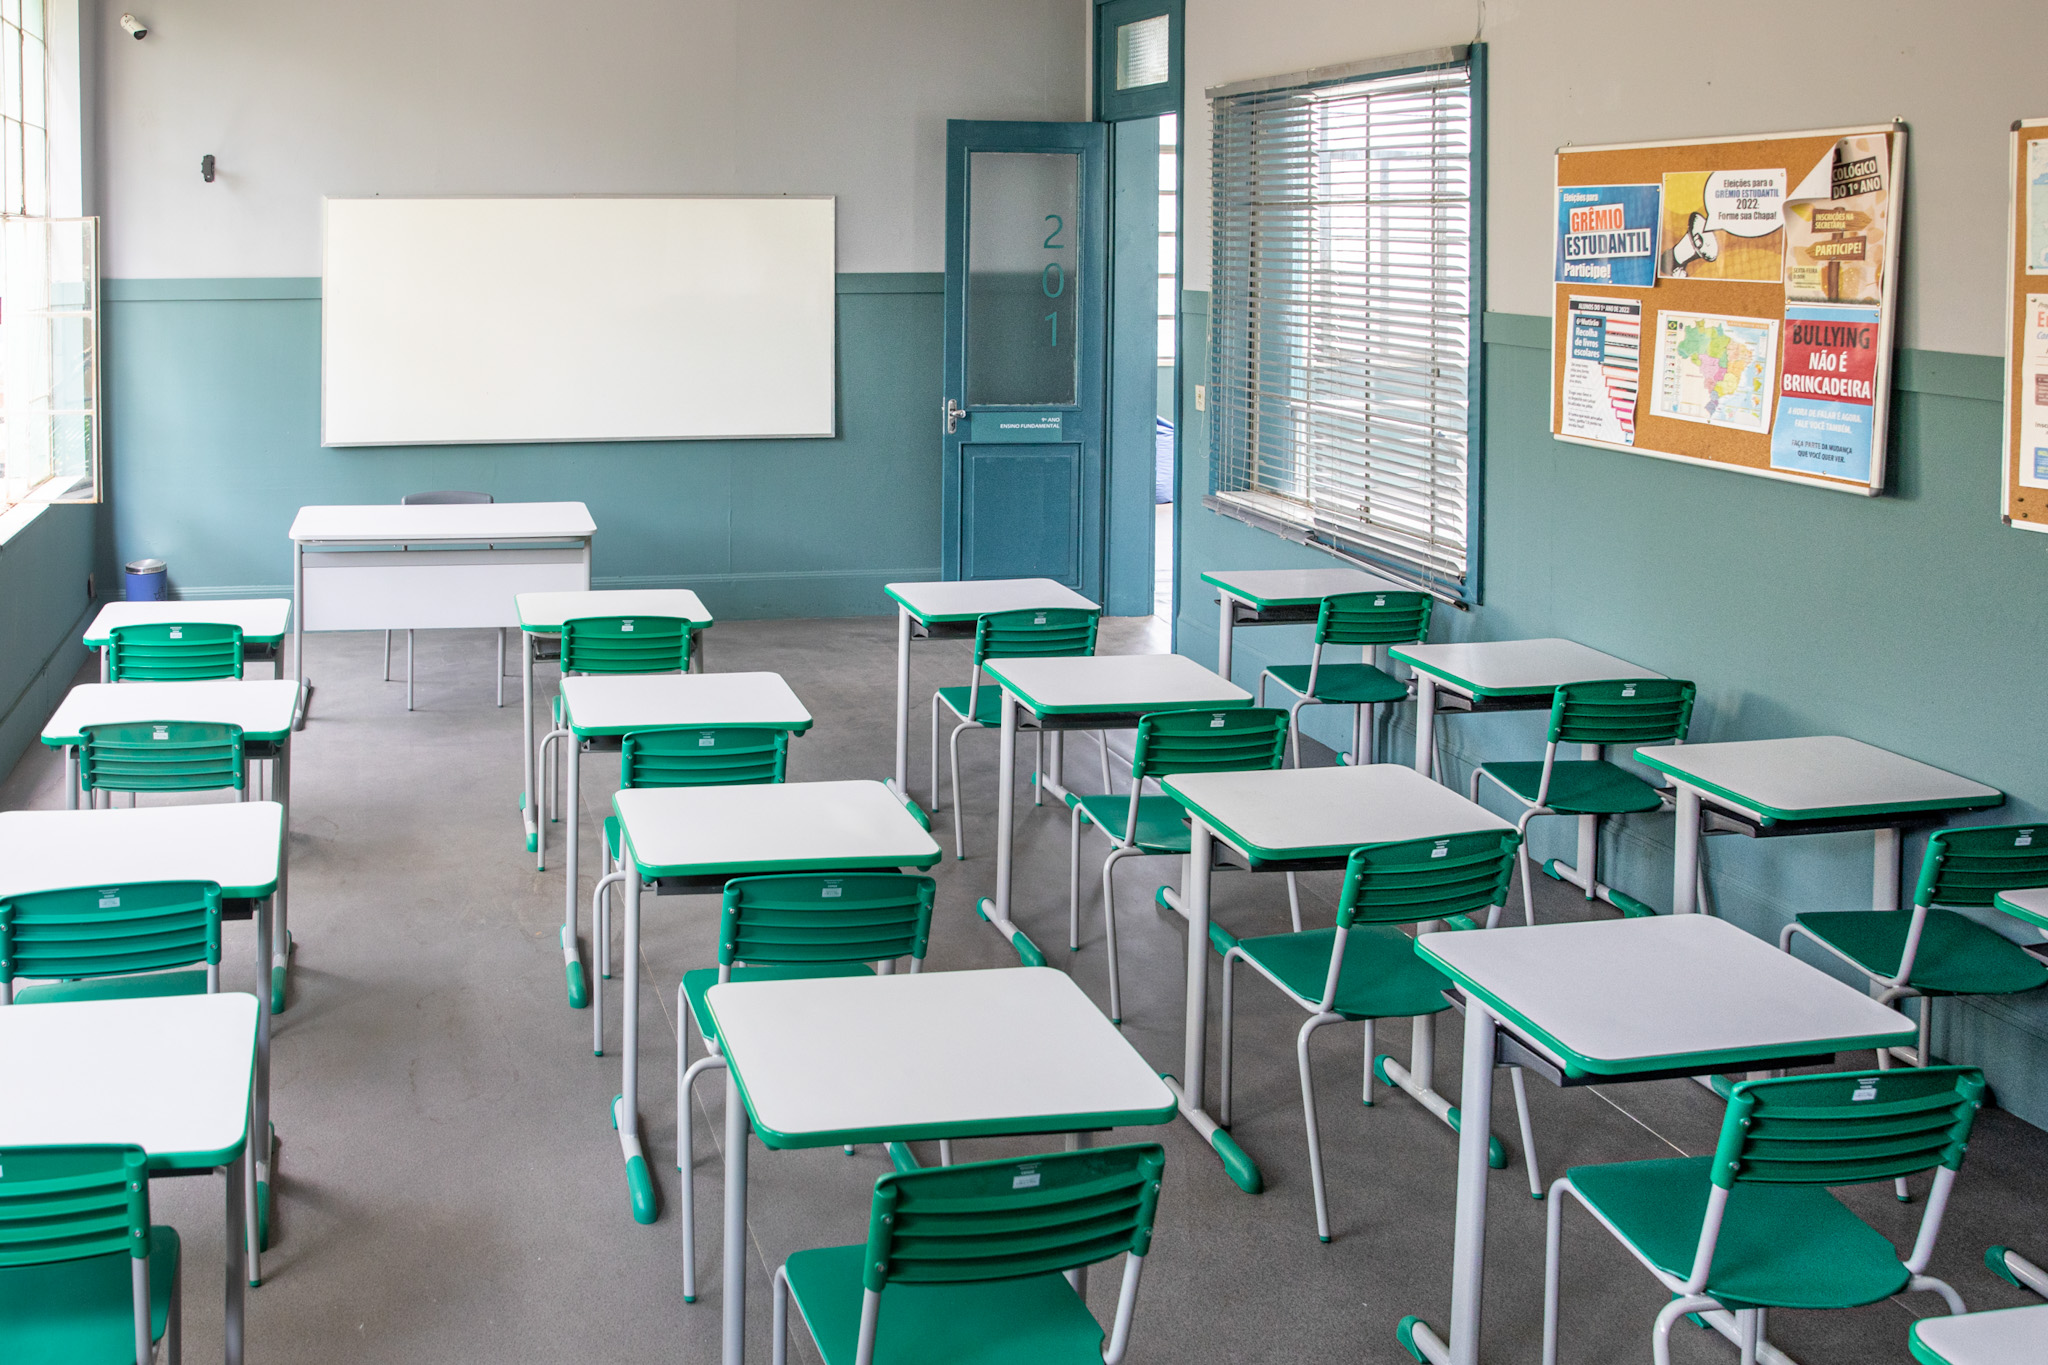 Sala de aula com mesas e cadeiras escolares em cor verde, ao fundo parede pintada até a metade da altura de verde com lousa branca